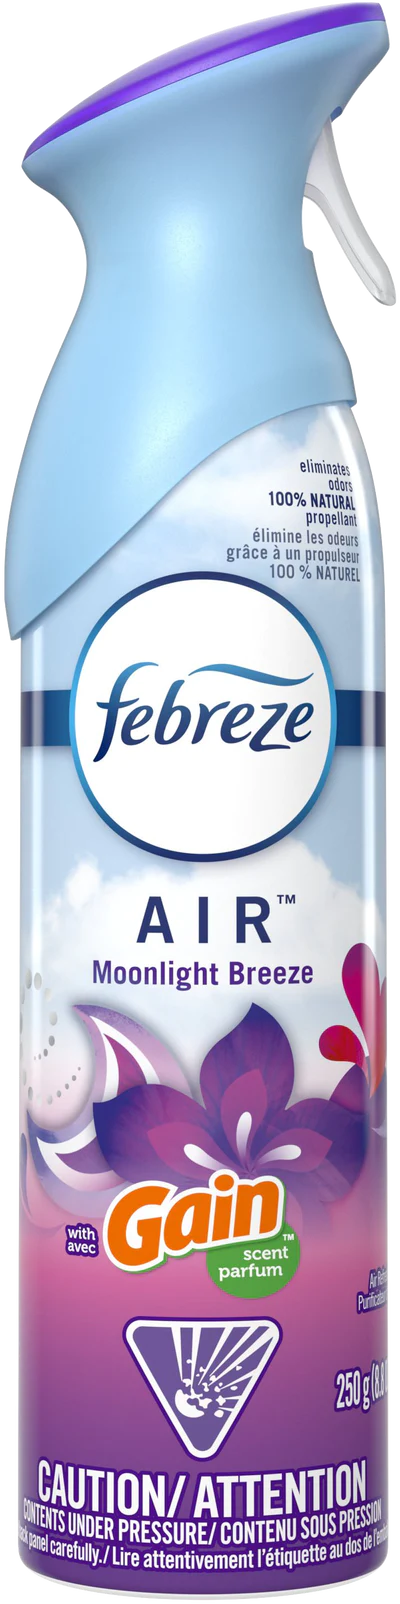 Febreze Air Freshner - Gain Moonlight Breeze (250g) - Quecan